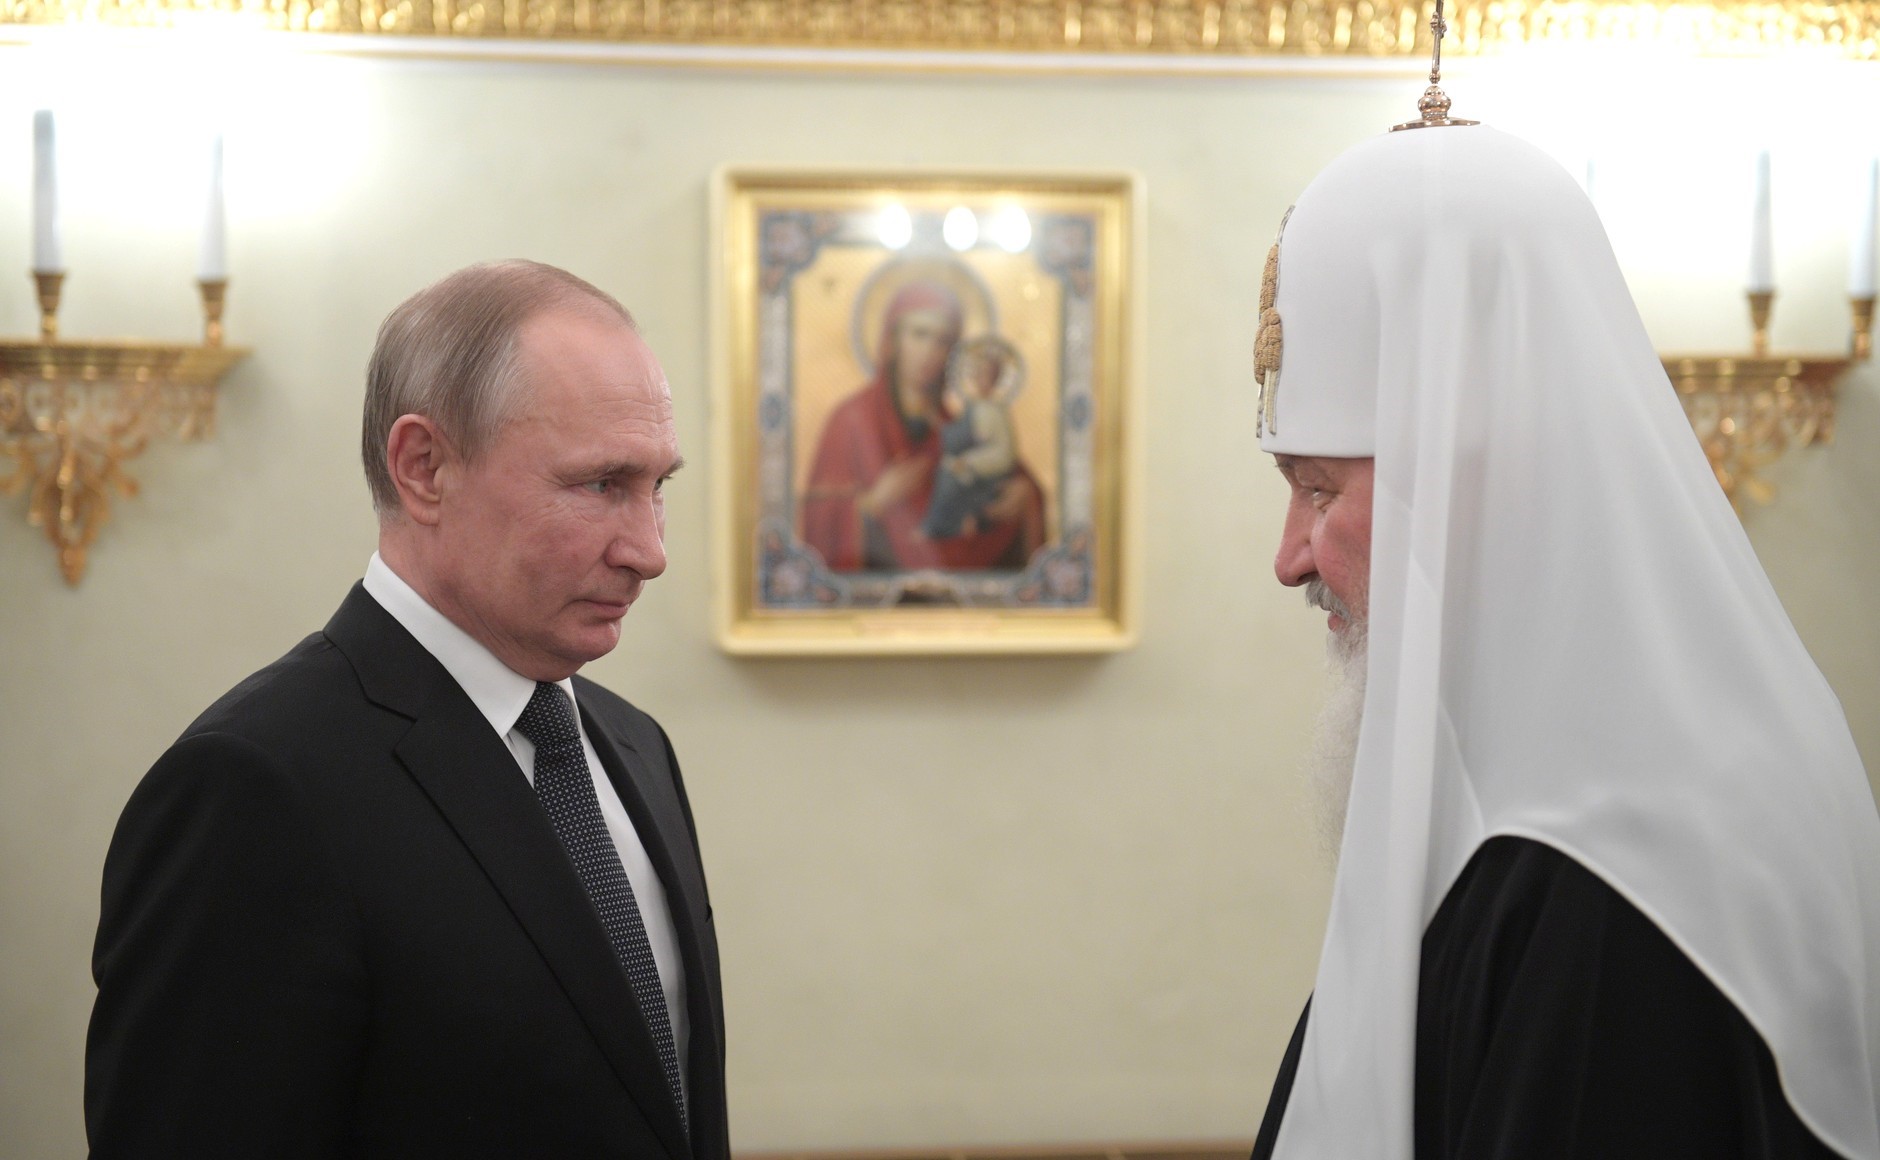 Konstytucyjny przewrót wyhamował. „Najwyższy przywódca” Putin?